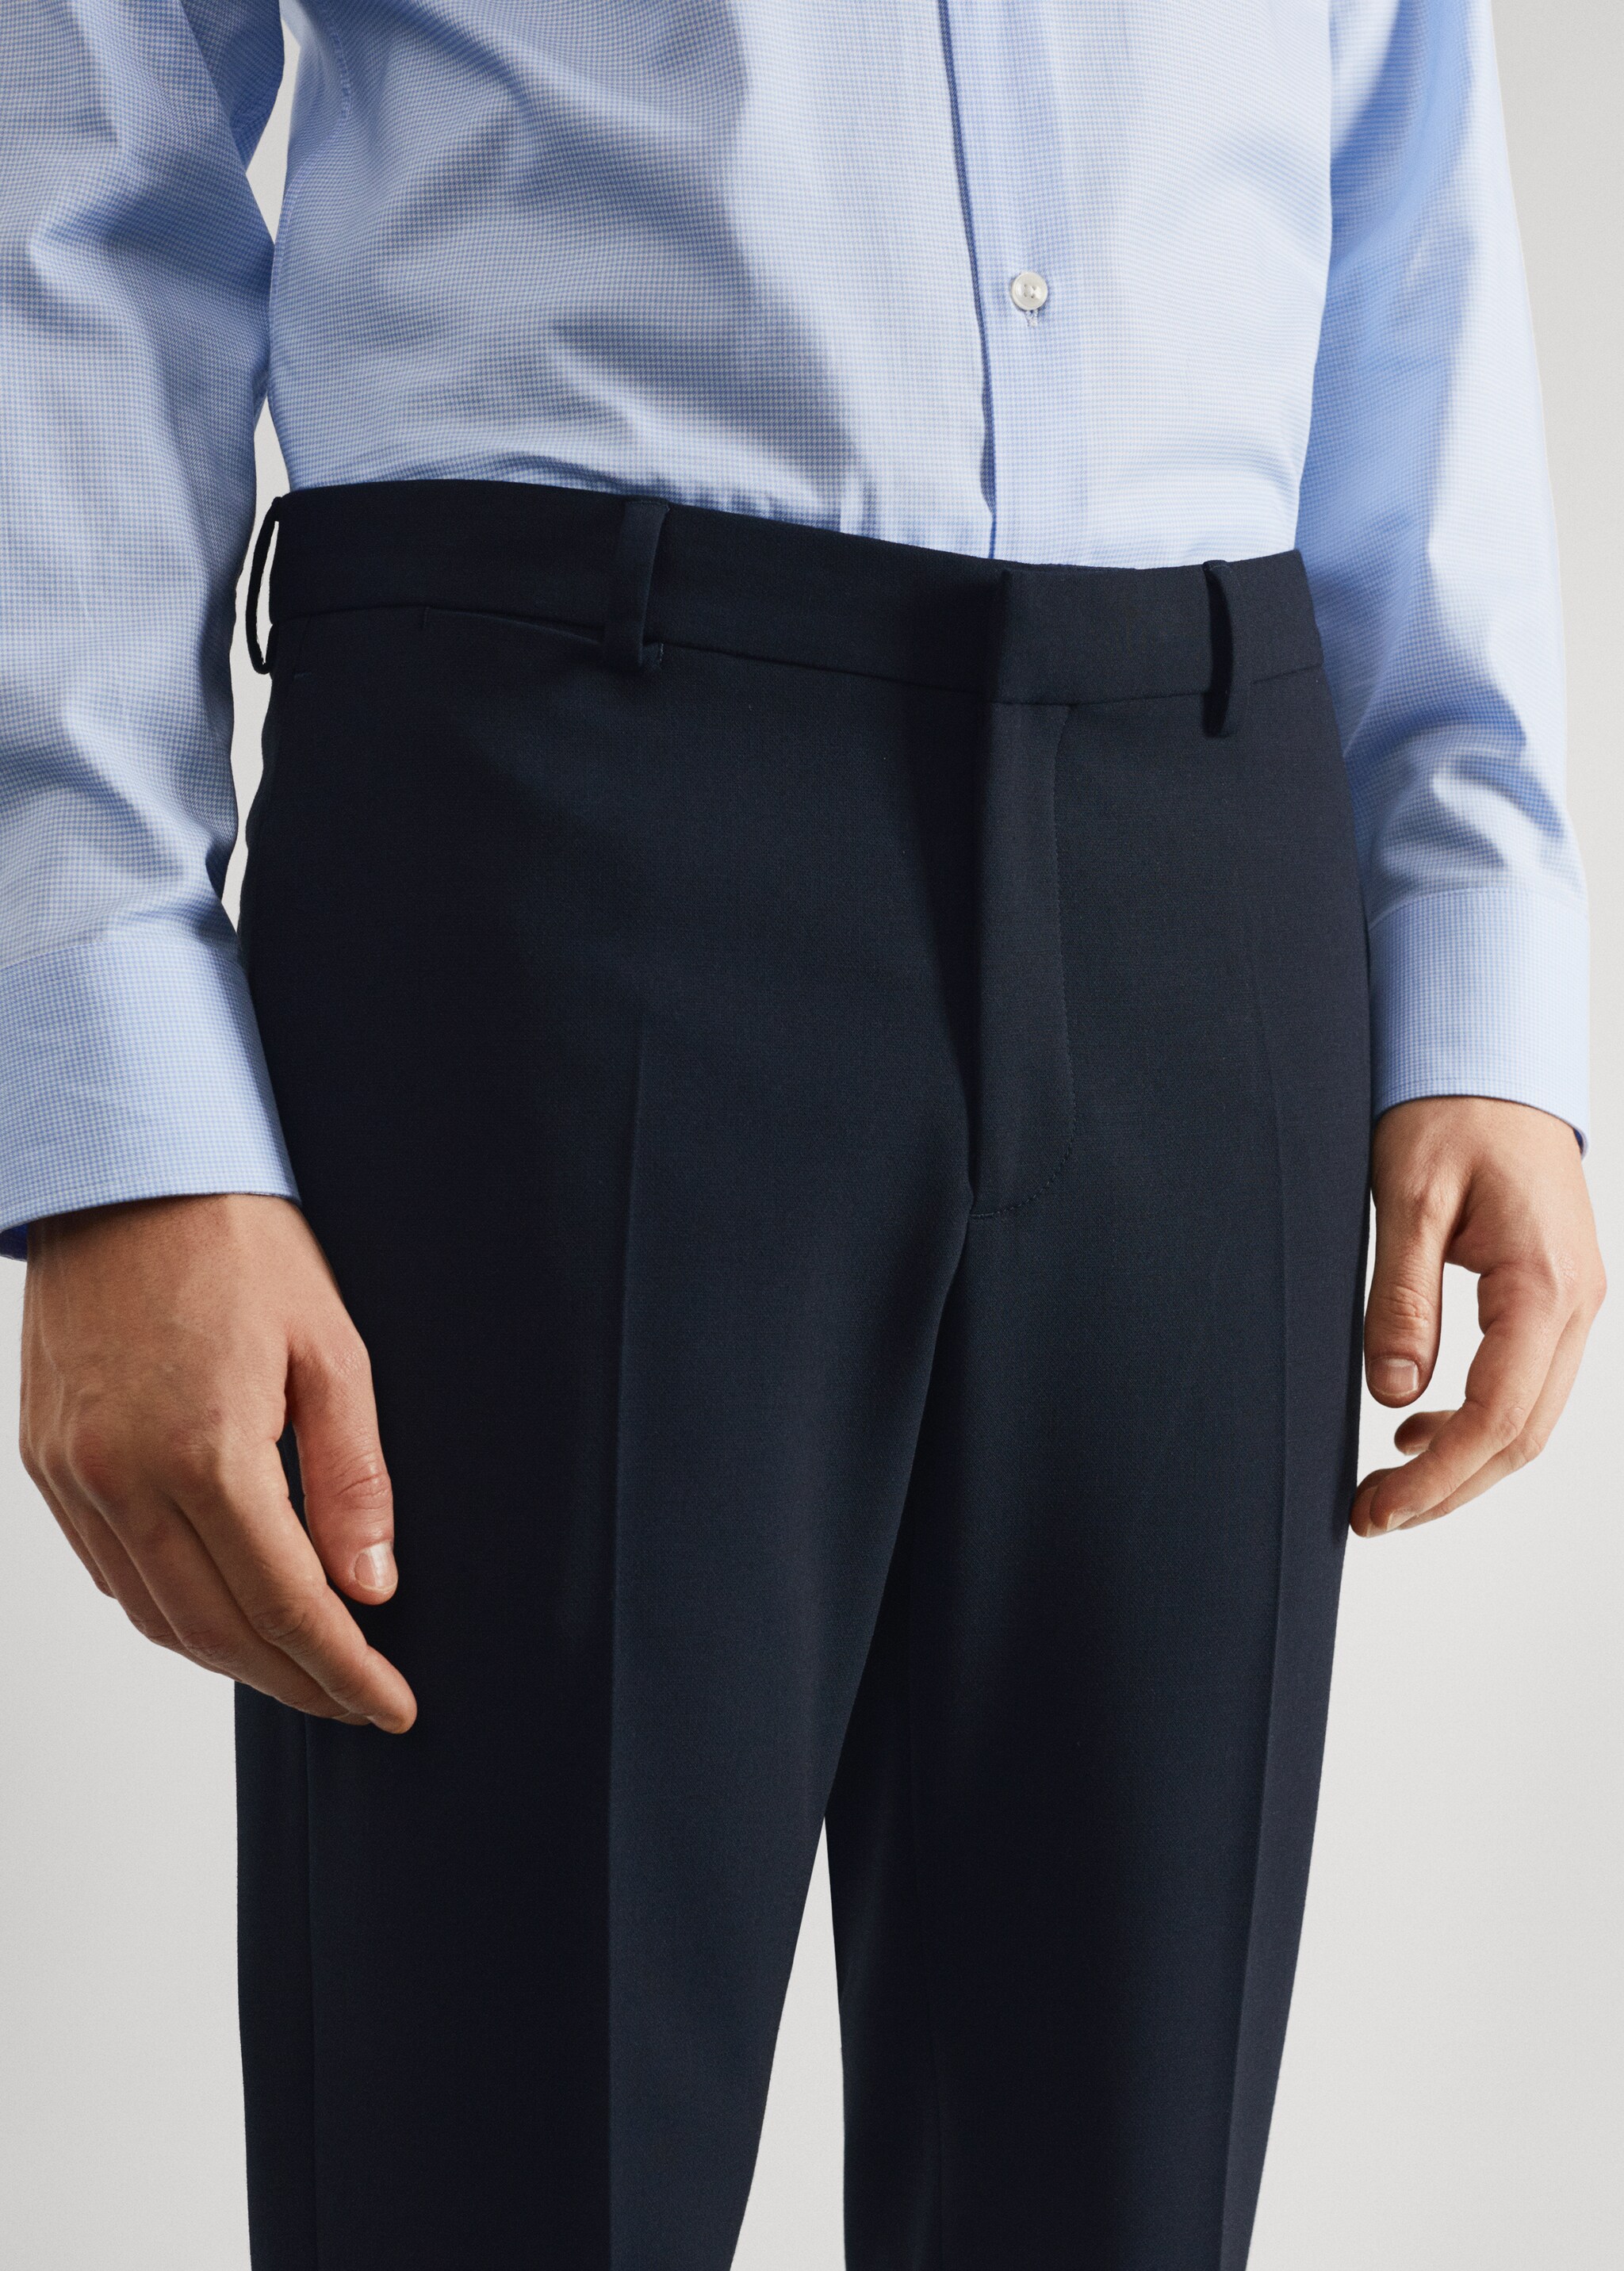 Pantalons vestir súper slim fit - Detall de l'article 1